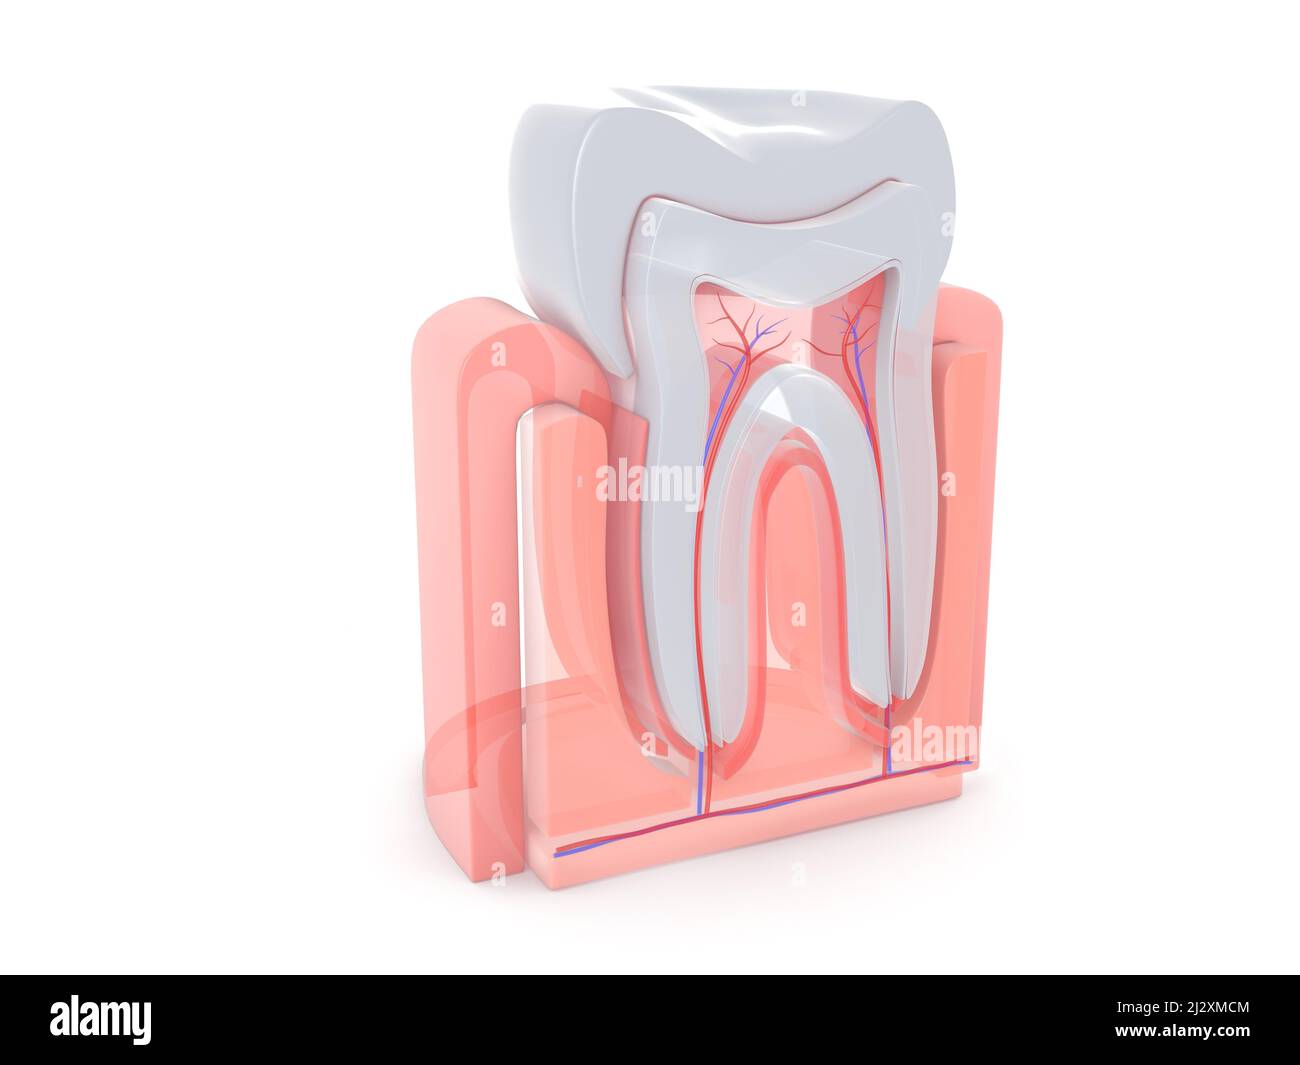 3d illustration de la vue anatomique de l'intérieur d'une dent molaire. Style transparent sur fond blanc. Banque D'Images